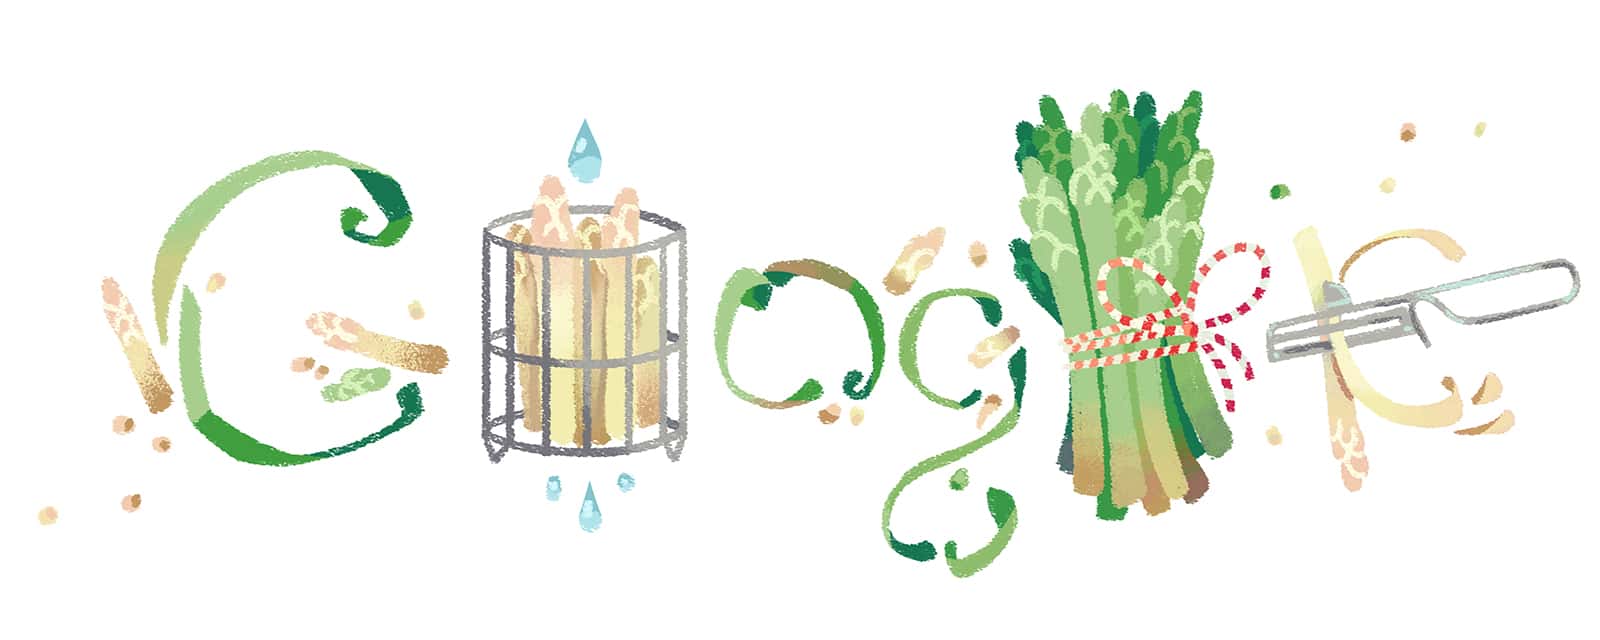 Spargelsaison: Google Doodle